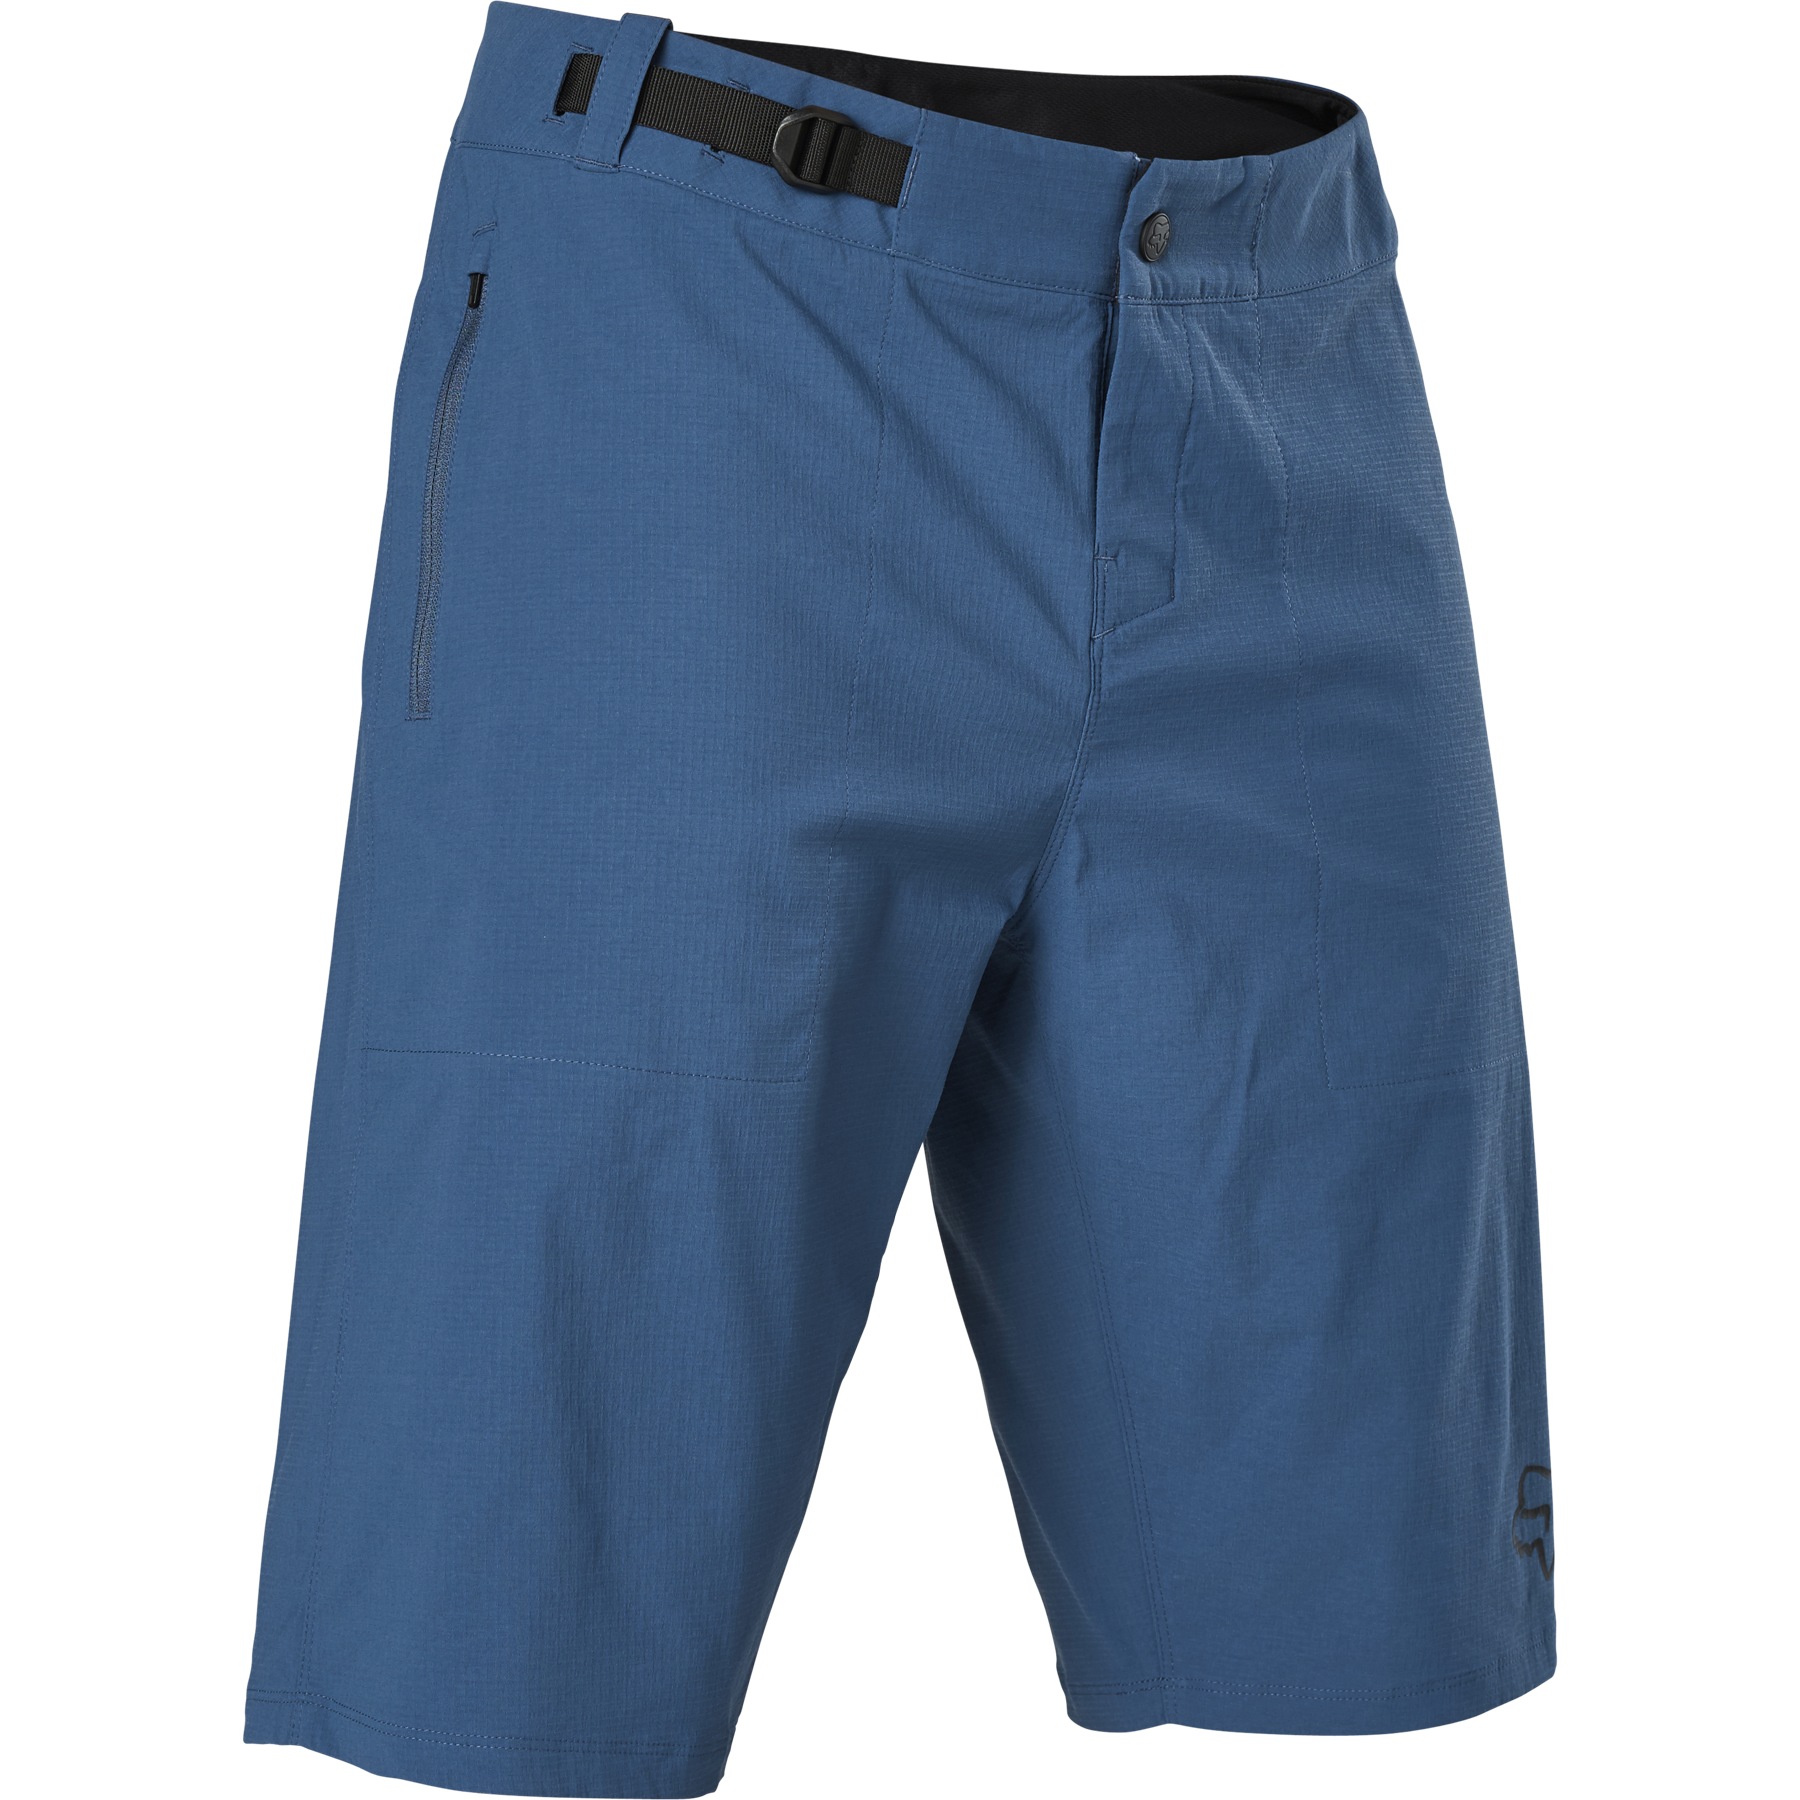 Produktbild von FOX Ranger MTB Shorts mit Innenhose Herren - dark indigo